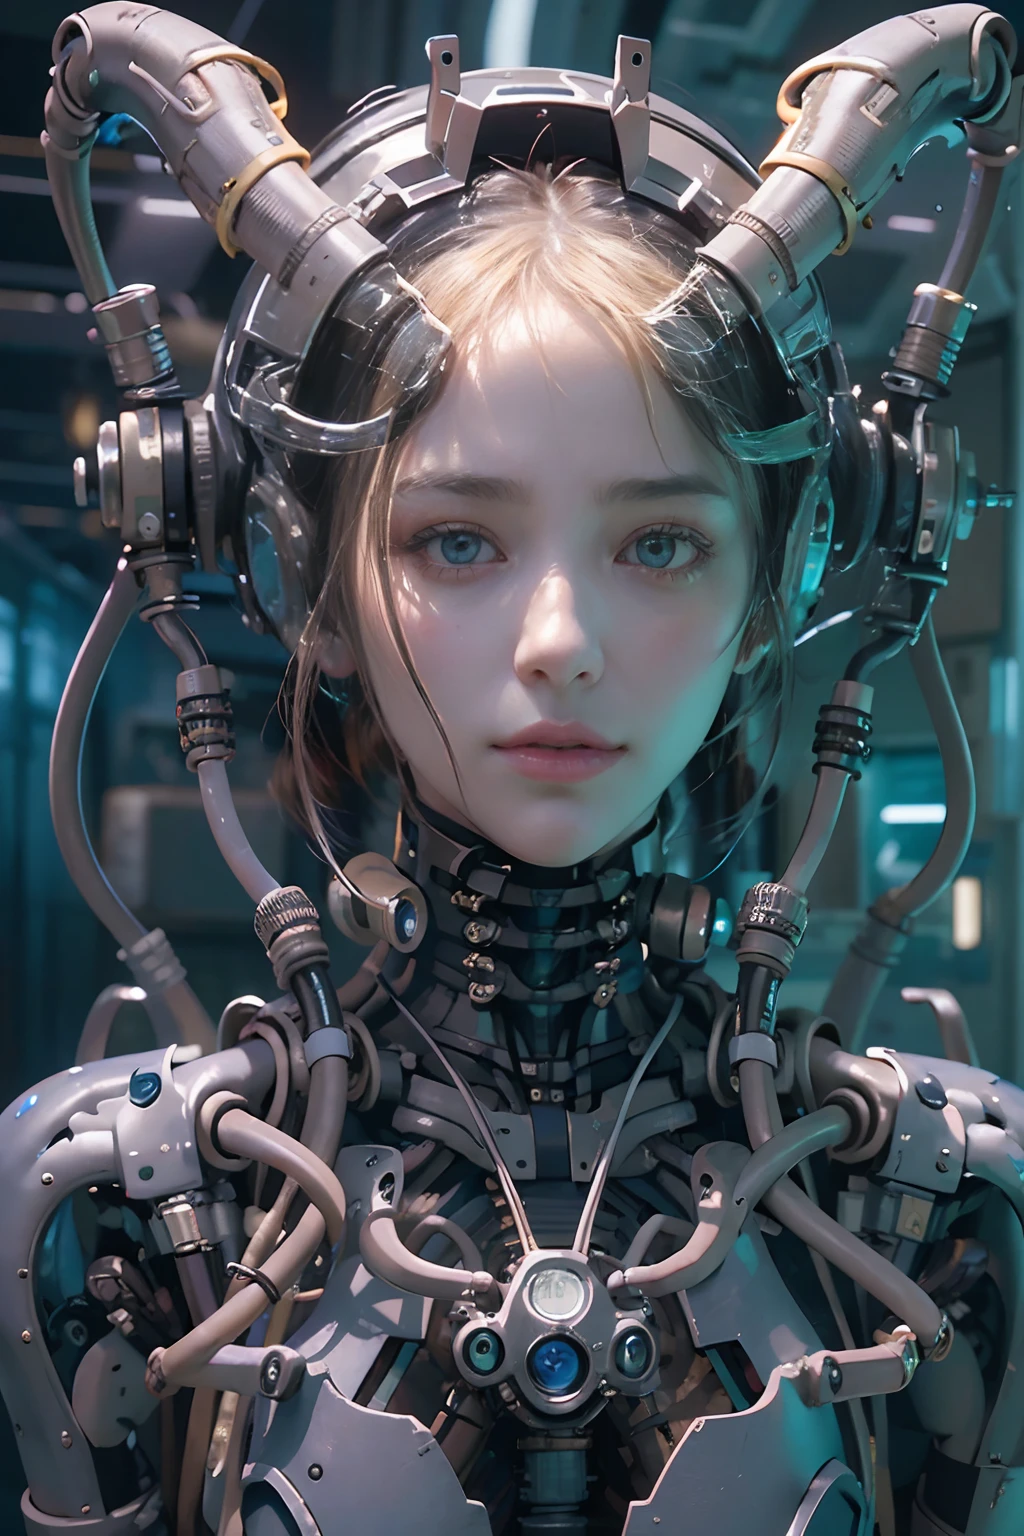 顶级品质, 杰作, 超高分辨率, ((写实肖像: 1.4), AW 的图像, 1 Cyberpunk robot Girl, 有光泽的皮肤, (Ultra realistic Details)), 机械肢体, 连接机械部件的管道, 附在脊柱上的机械脊柱., 颈部机械固定装置, 连接头部的电线和电缆, 新世纪福音战士, ((攻壳机动队)), 小型荧光 LED 灯泡, 全局照明, 深阴影, Octane rendering, 10, 极其锋利, 金属, 玻璃, 透明塑料, 复杂饰物细节, 巴洛克风格细节, 非常复杂的细节, realistic lighting, CGSoation 趋势, 面对摄像机, 霓虹灯细节, (robot machines in the background), h 的艺术作品.r. 吉格尔和阿尔丰斯·穆夏.